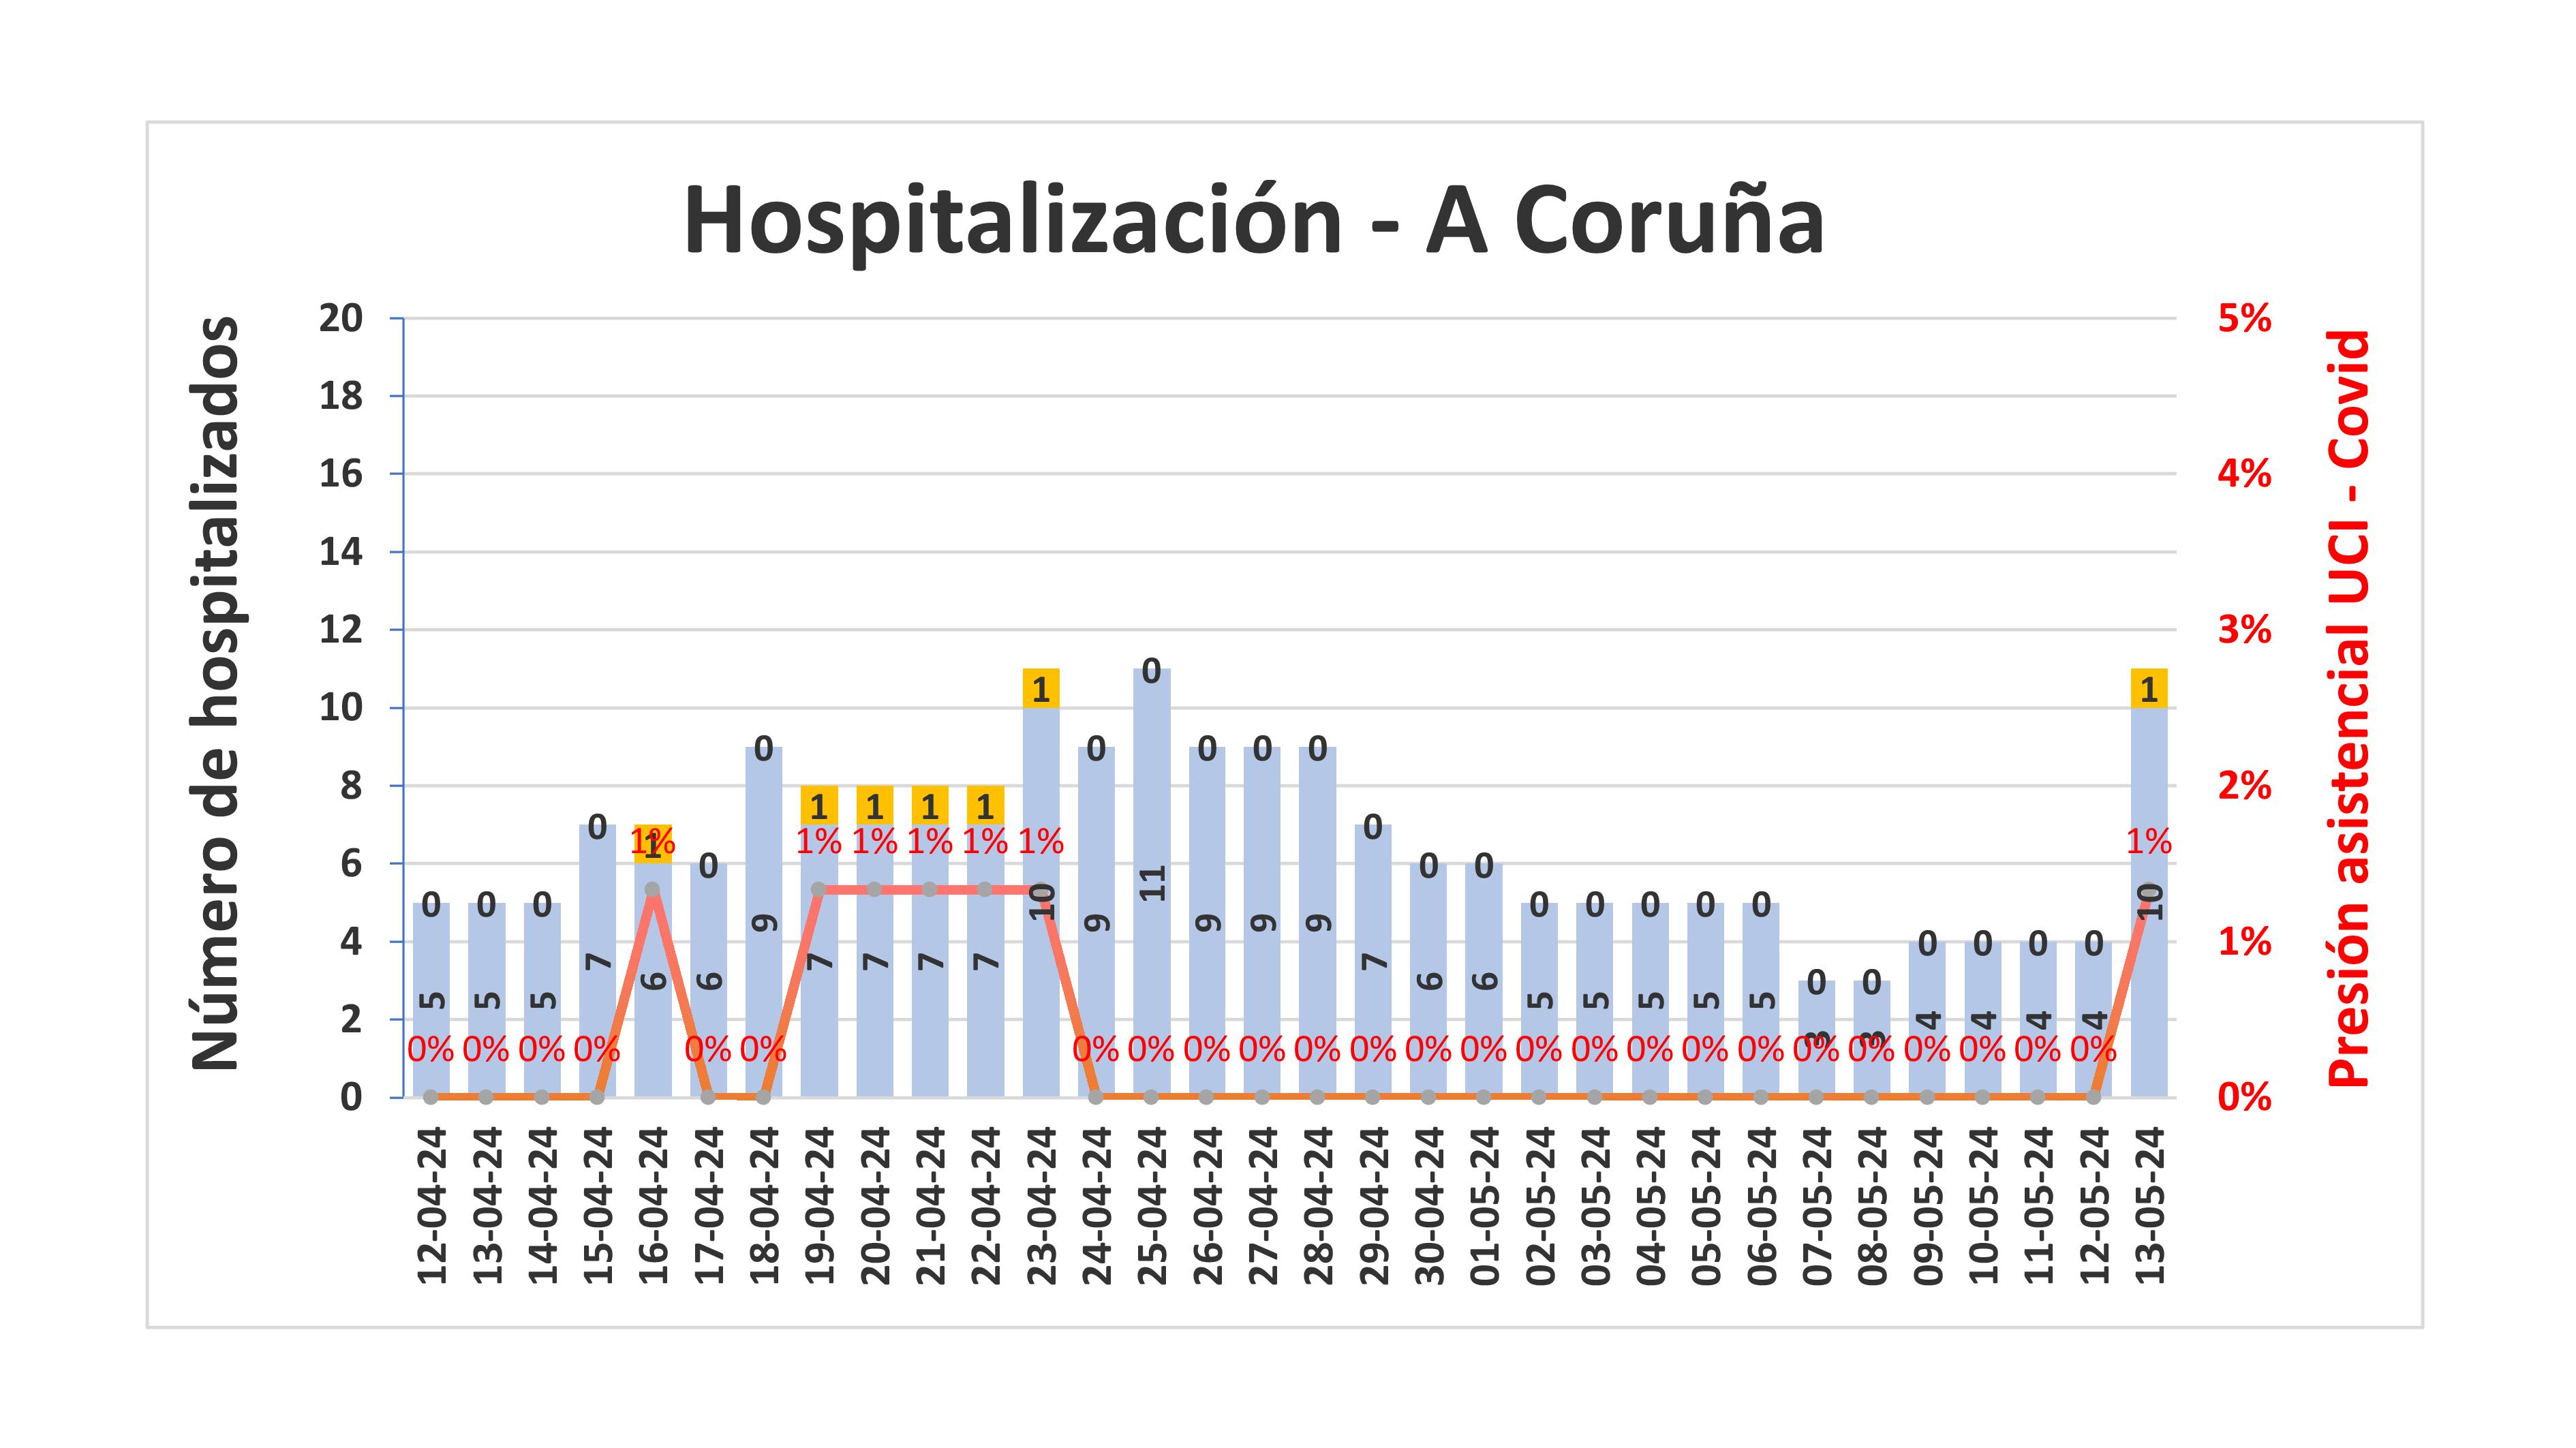 Hospitalización na área de A Coruña